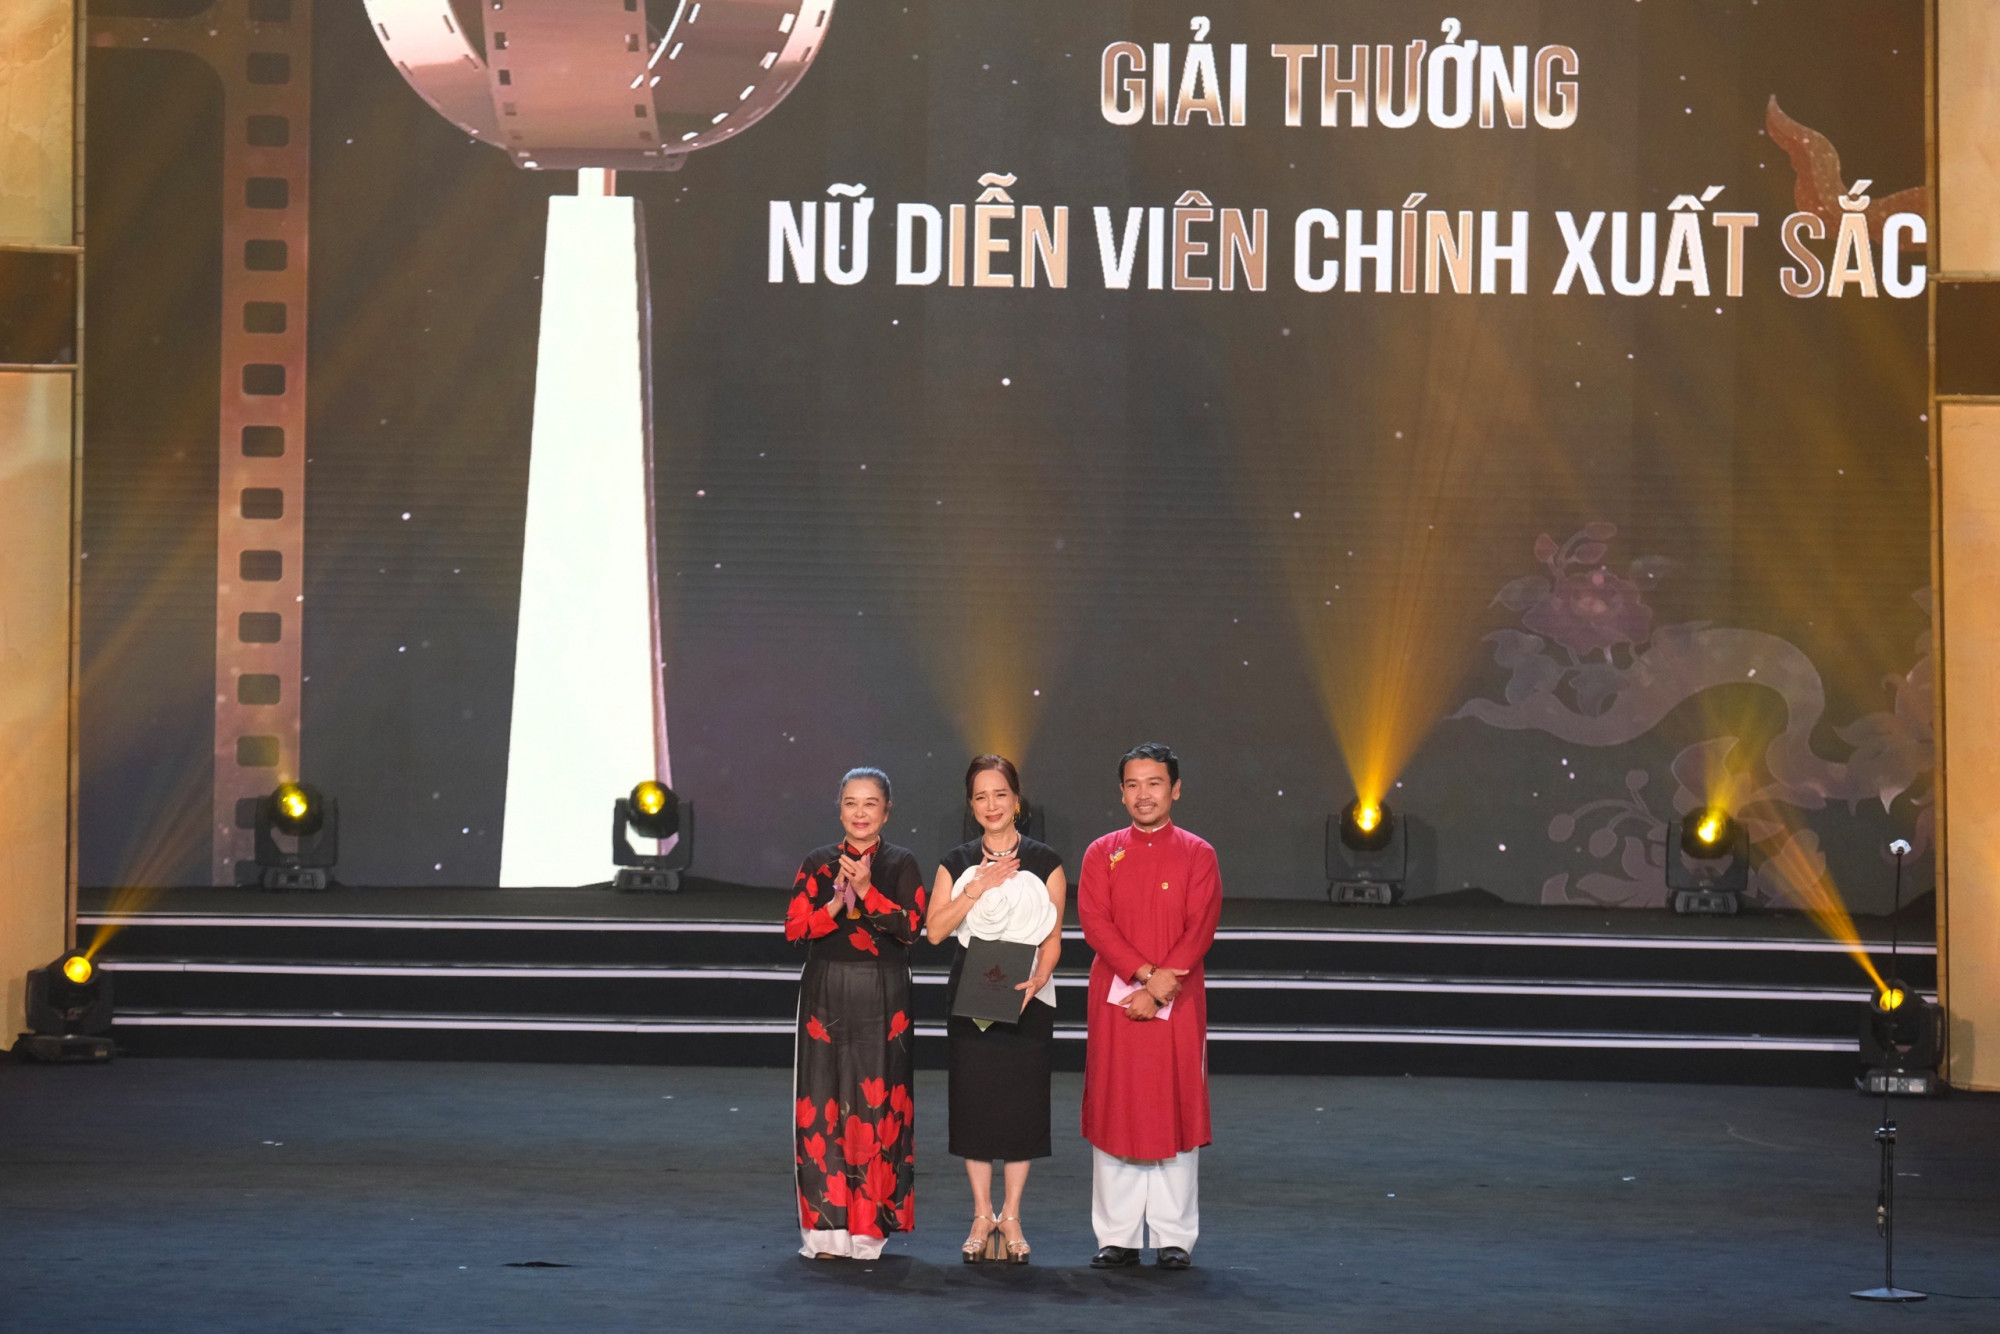 Nữ diễn viên chính xuất sắc hạng mục phim truyện điện ảnh trược trao Nghệ sĩ nhân dân Lê Khanh 